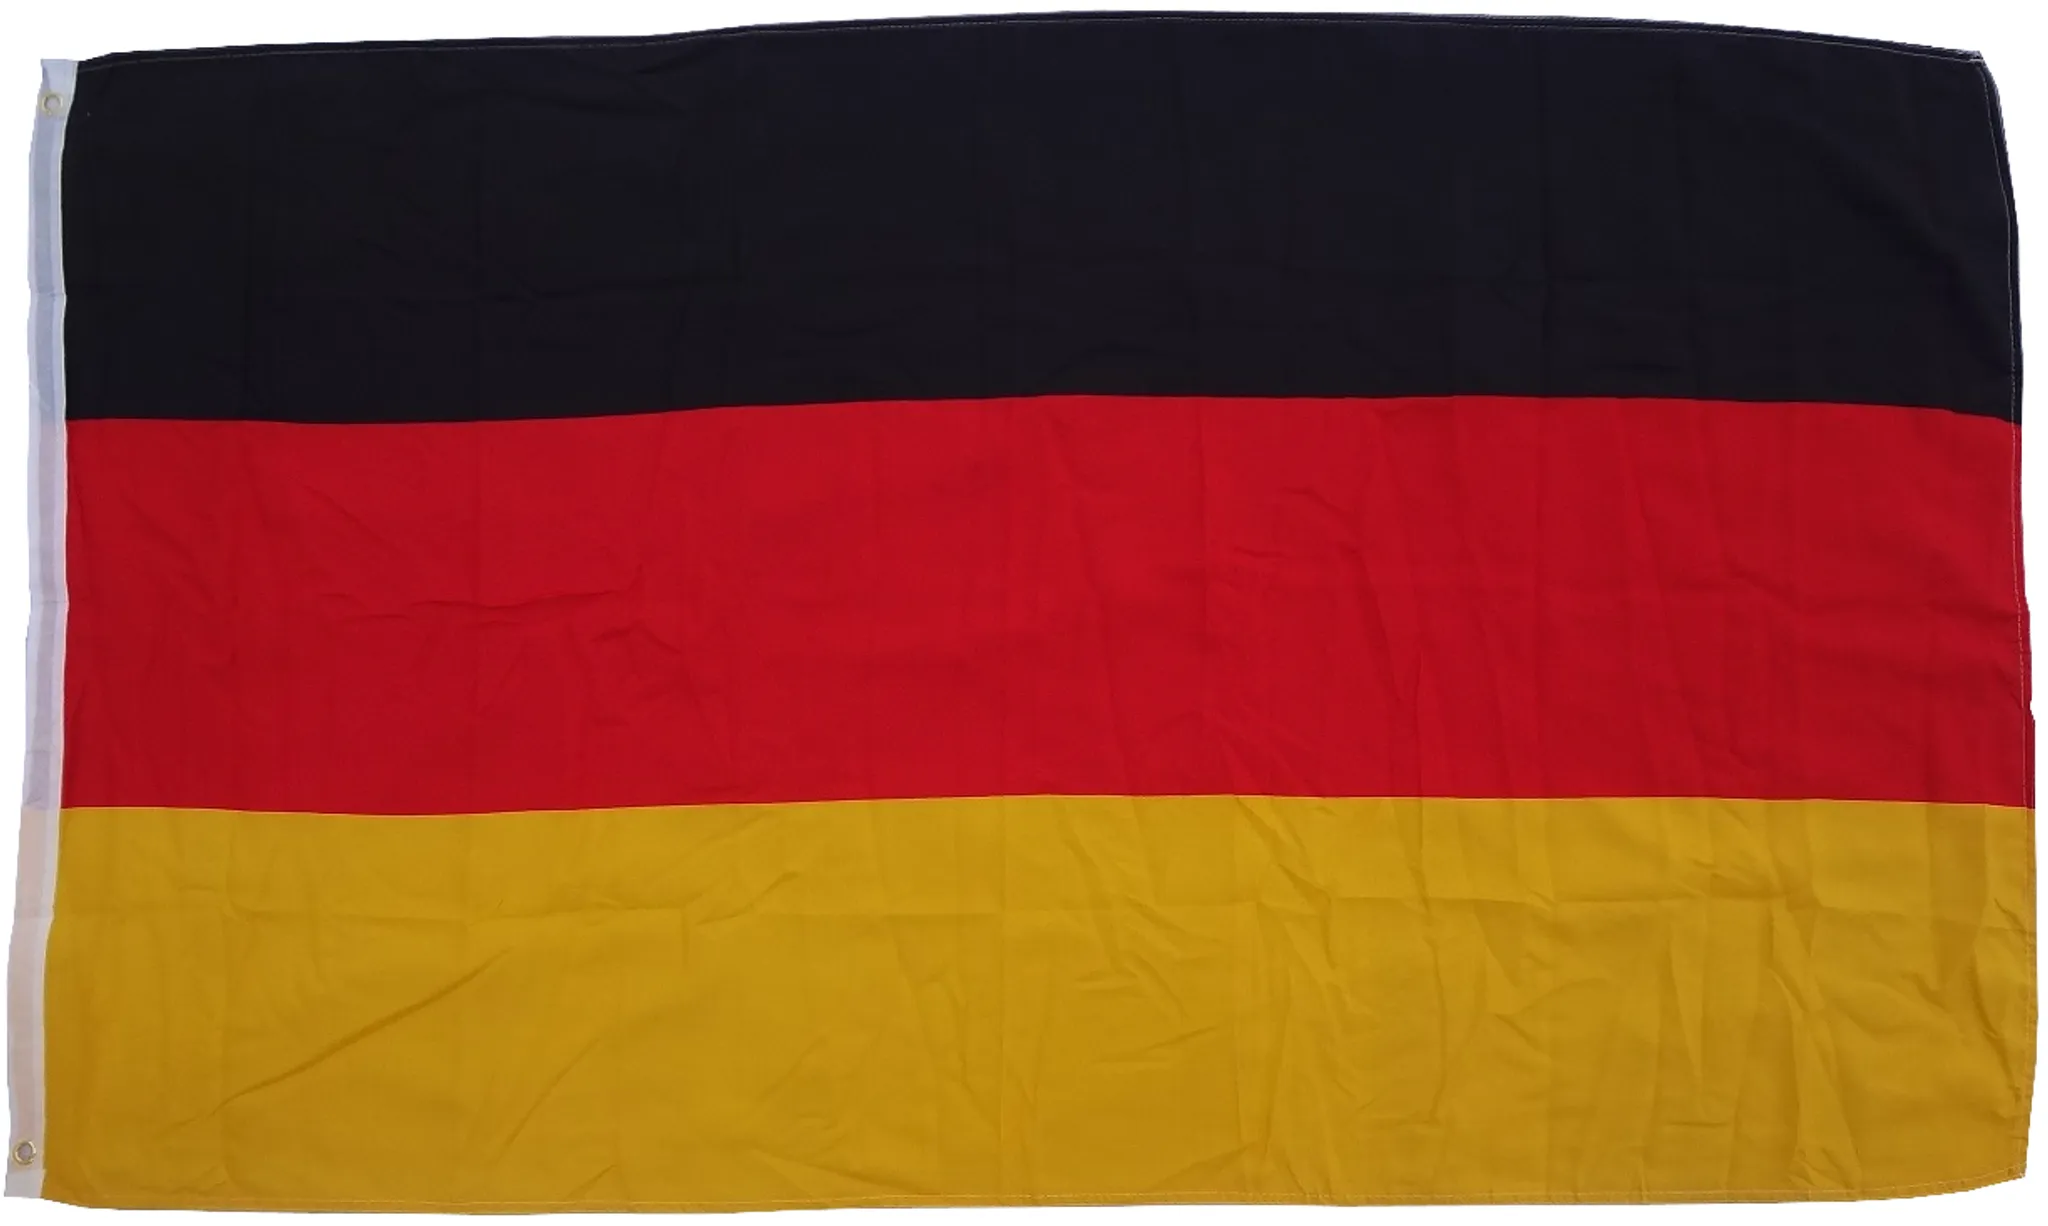 Die deutsche Flagge zum Aufkleben aufs Fahrzeug